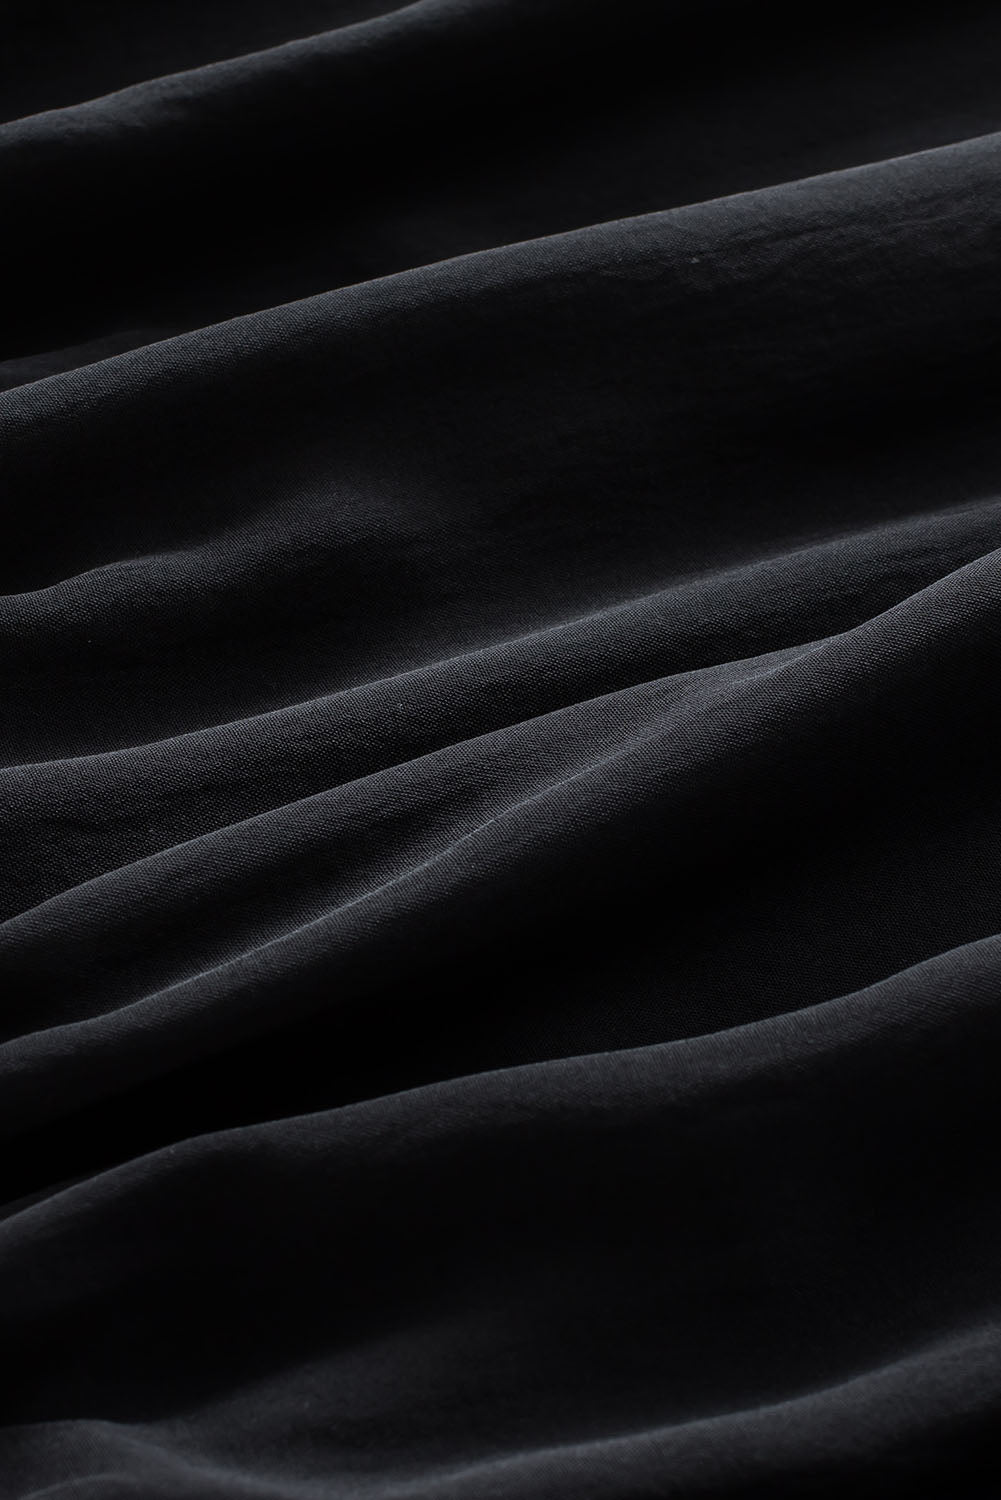 Schwarze, plissierte, lockere Bluse mit gepolsterten Schultern und geknöpften Manschetten